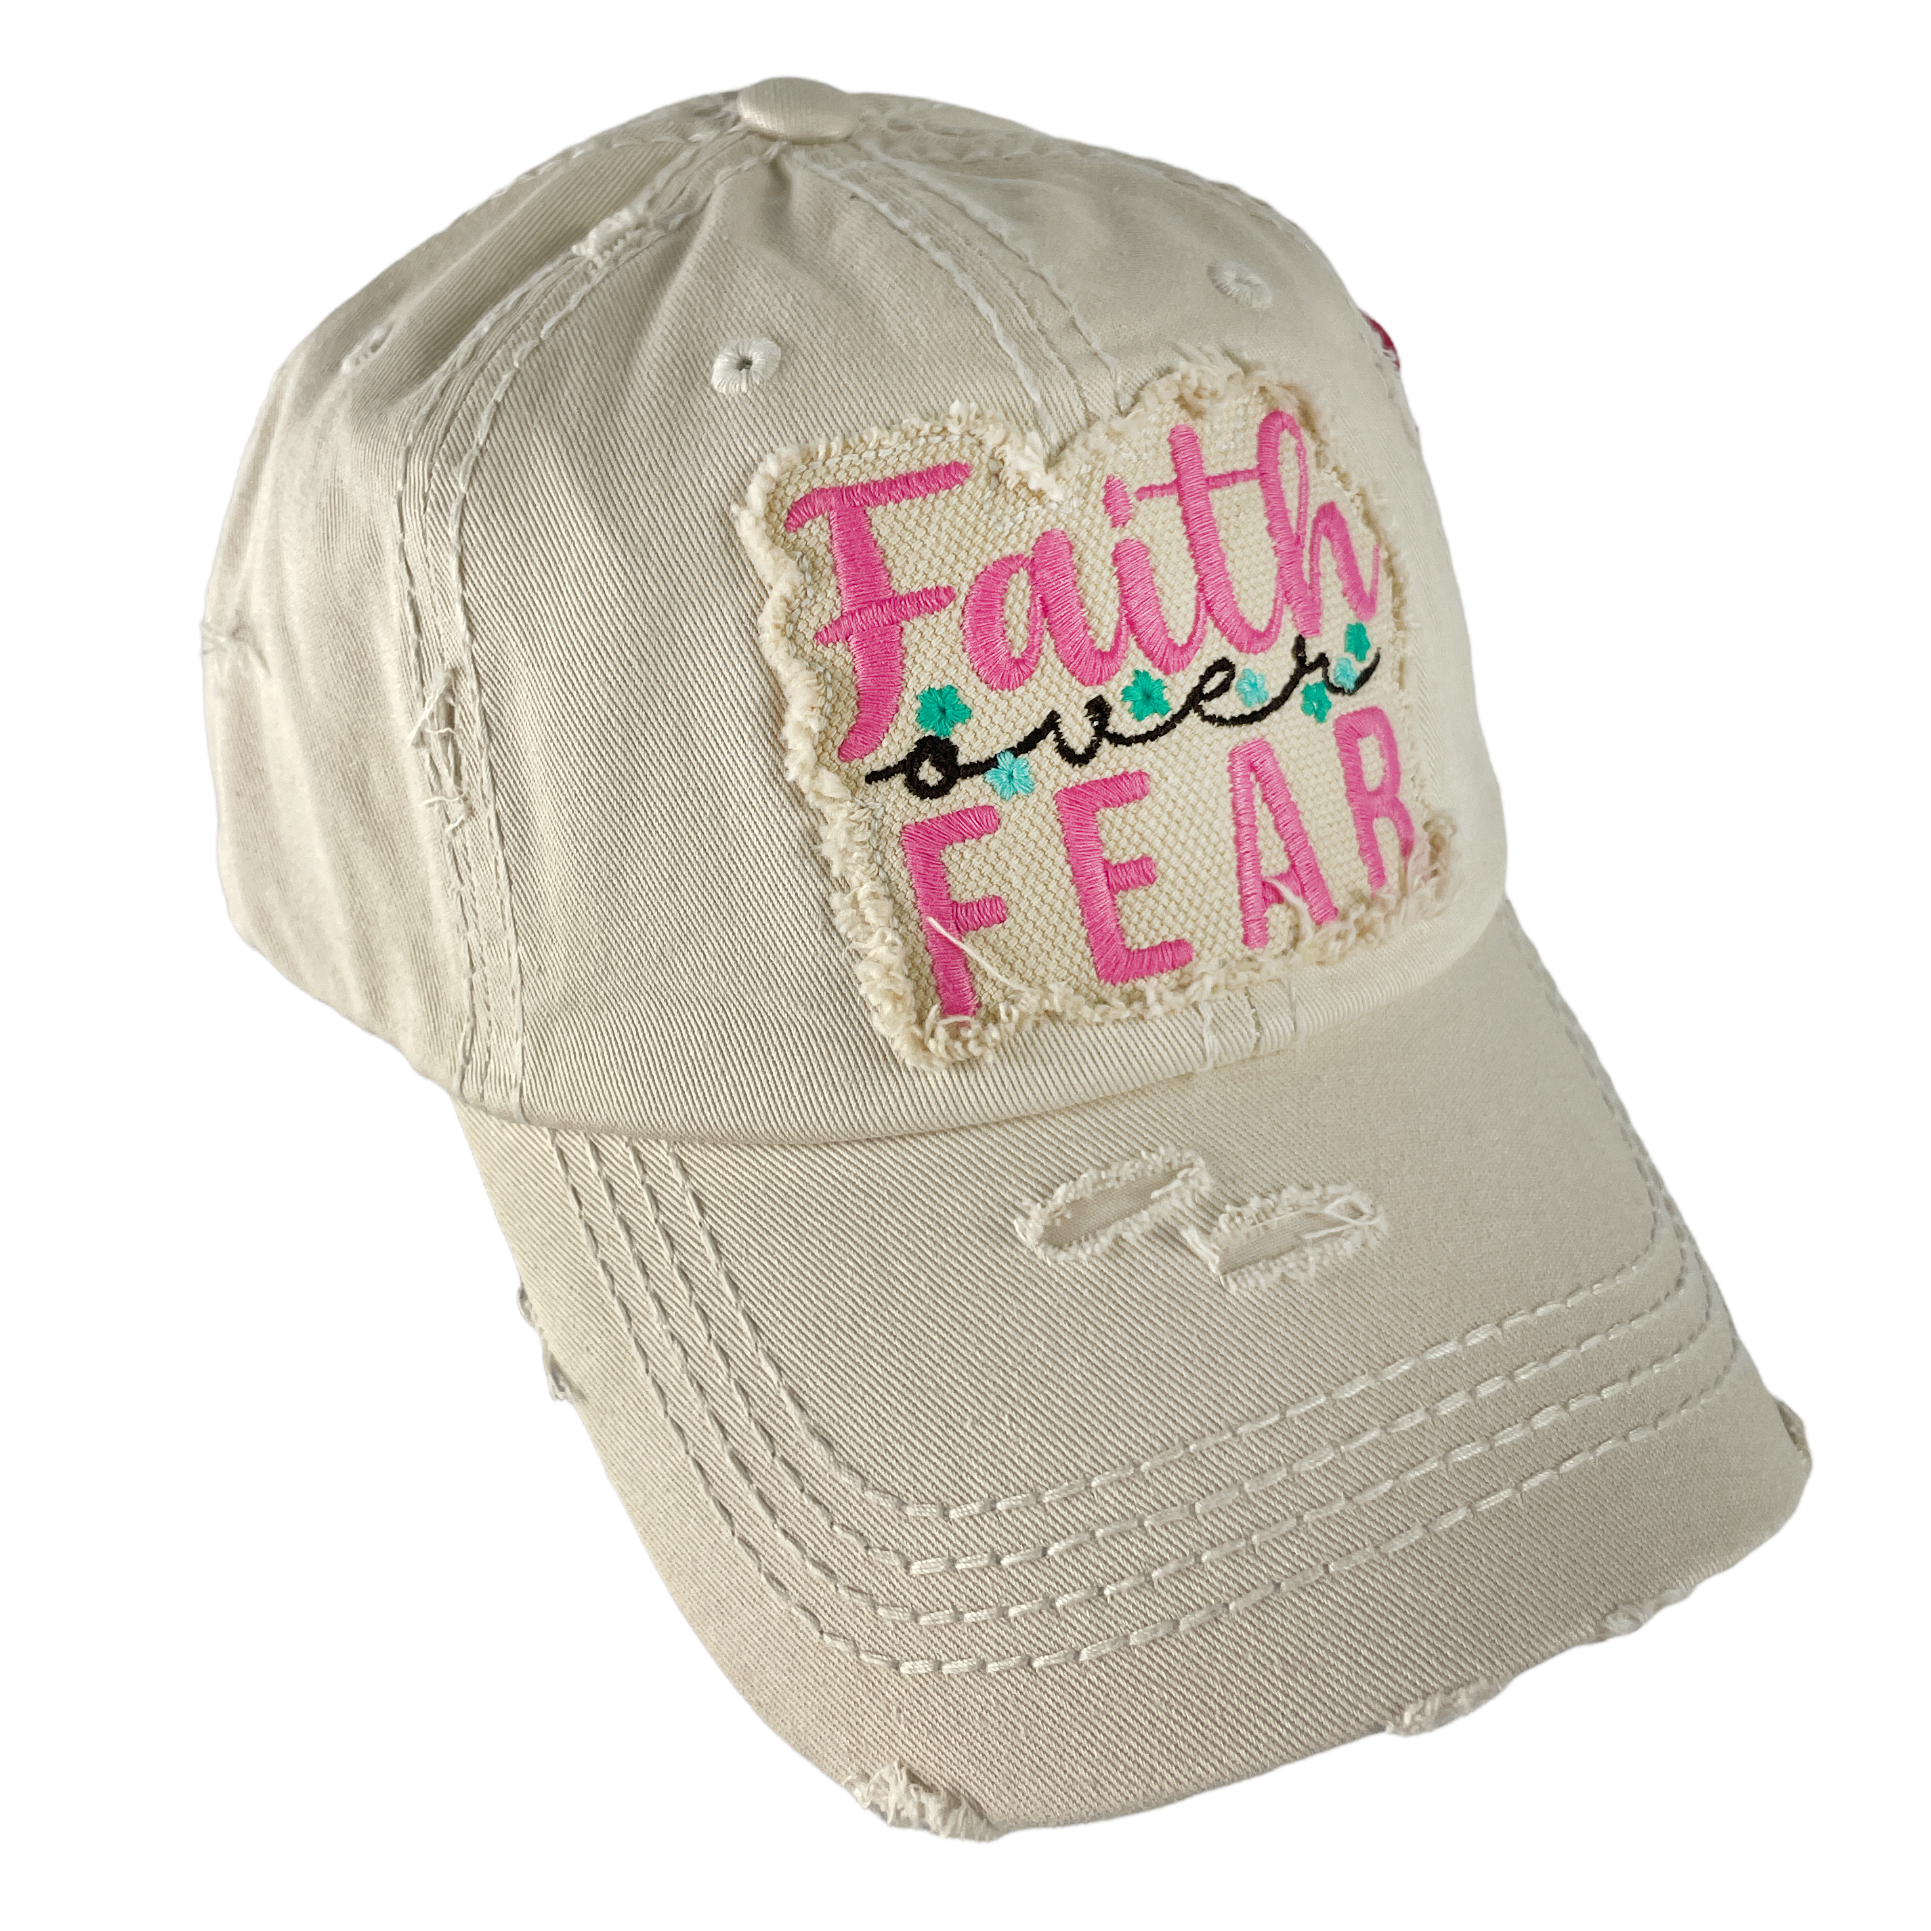 KBV-1418 STN Faith Over Fear